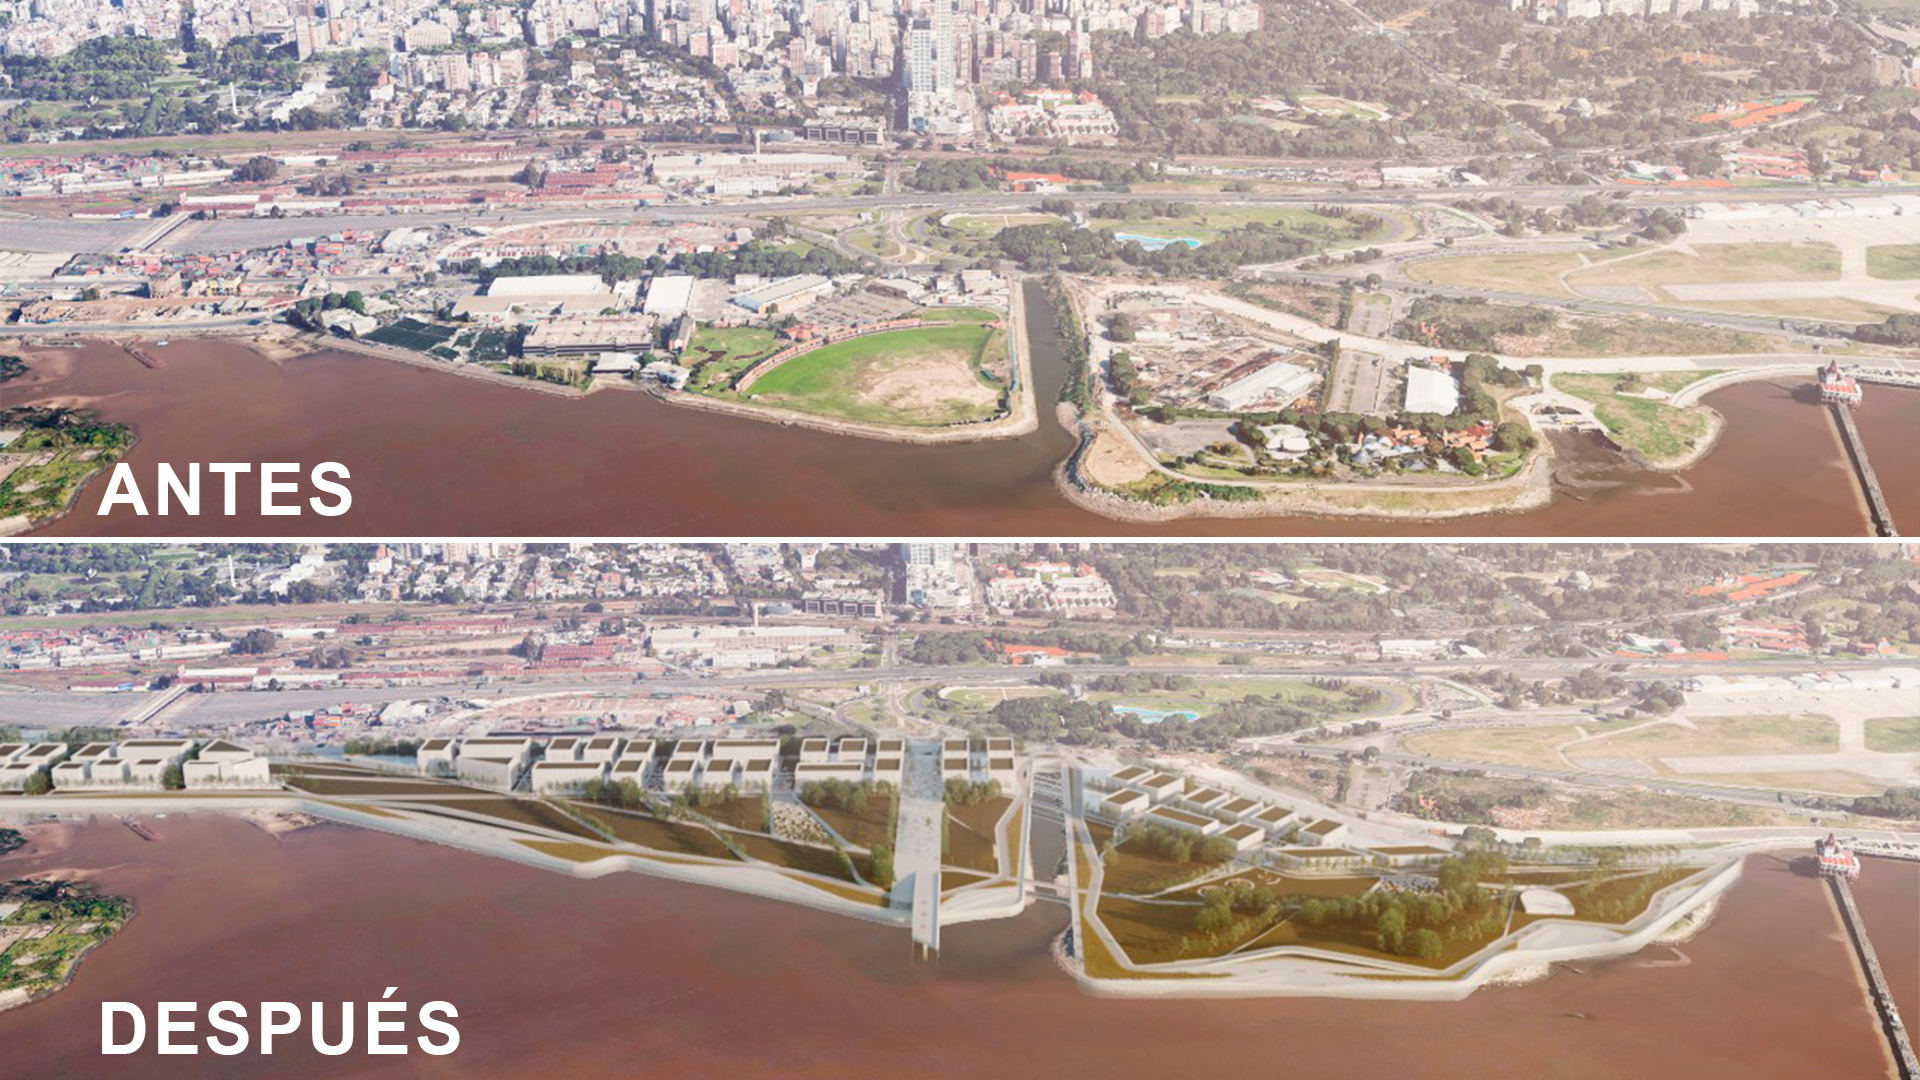 El poryecto urbanstico que plantea el gobierno de la Ciudad de Buenos Aires defiende la mixtura de usos que afirman combina viviendas y espacios verdes